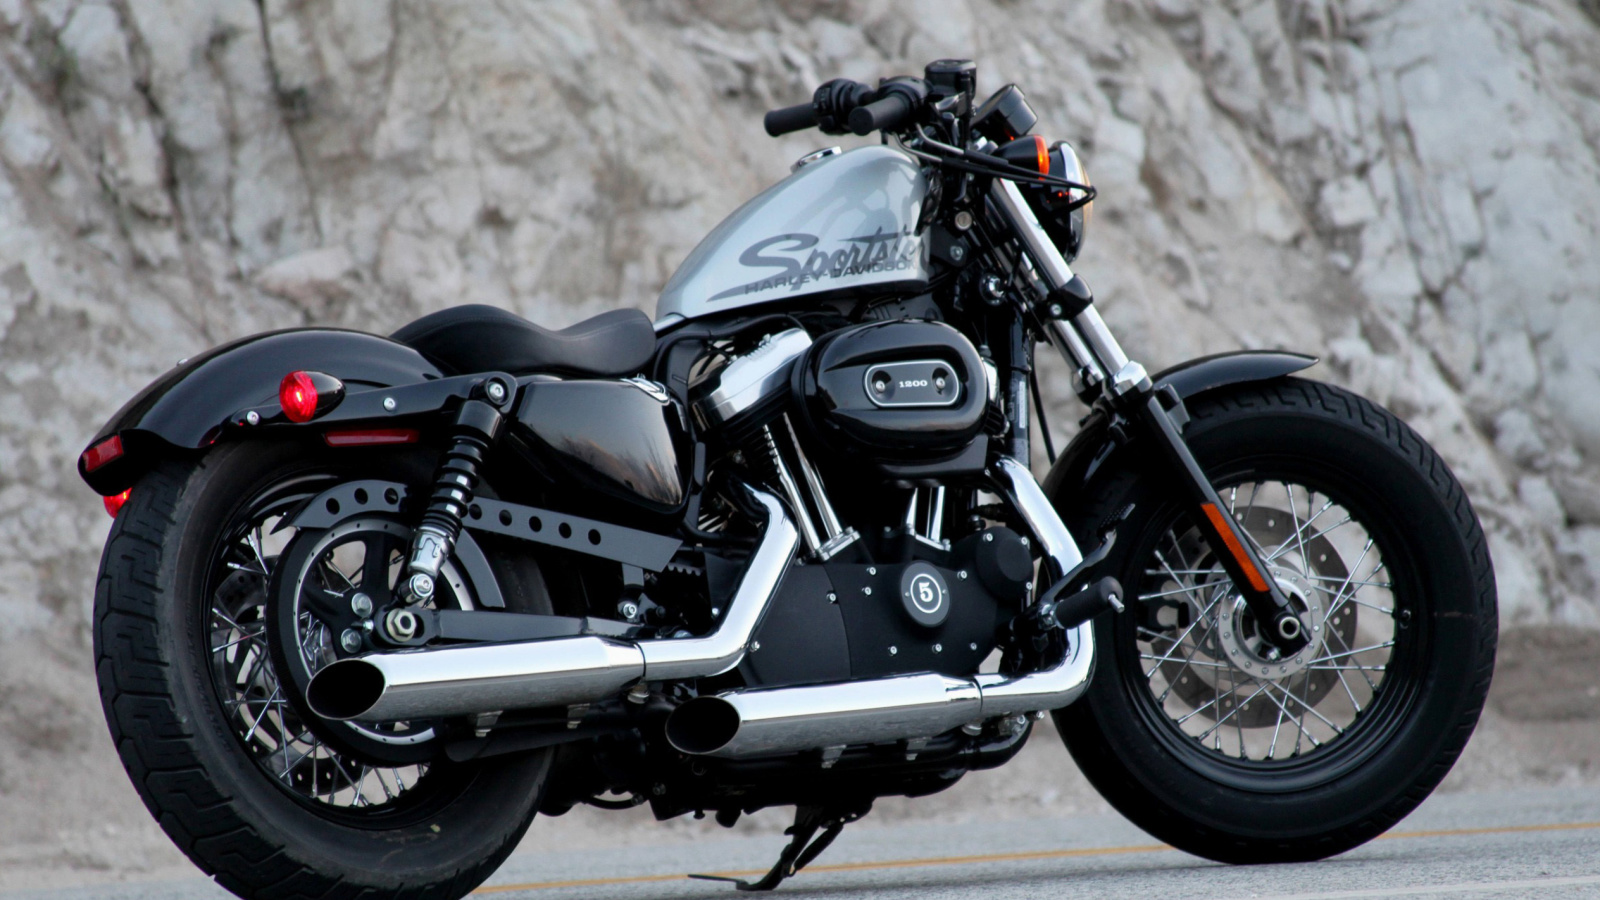 Sfondi Harley Davidson Sportster 1200 1600x900